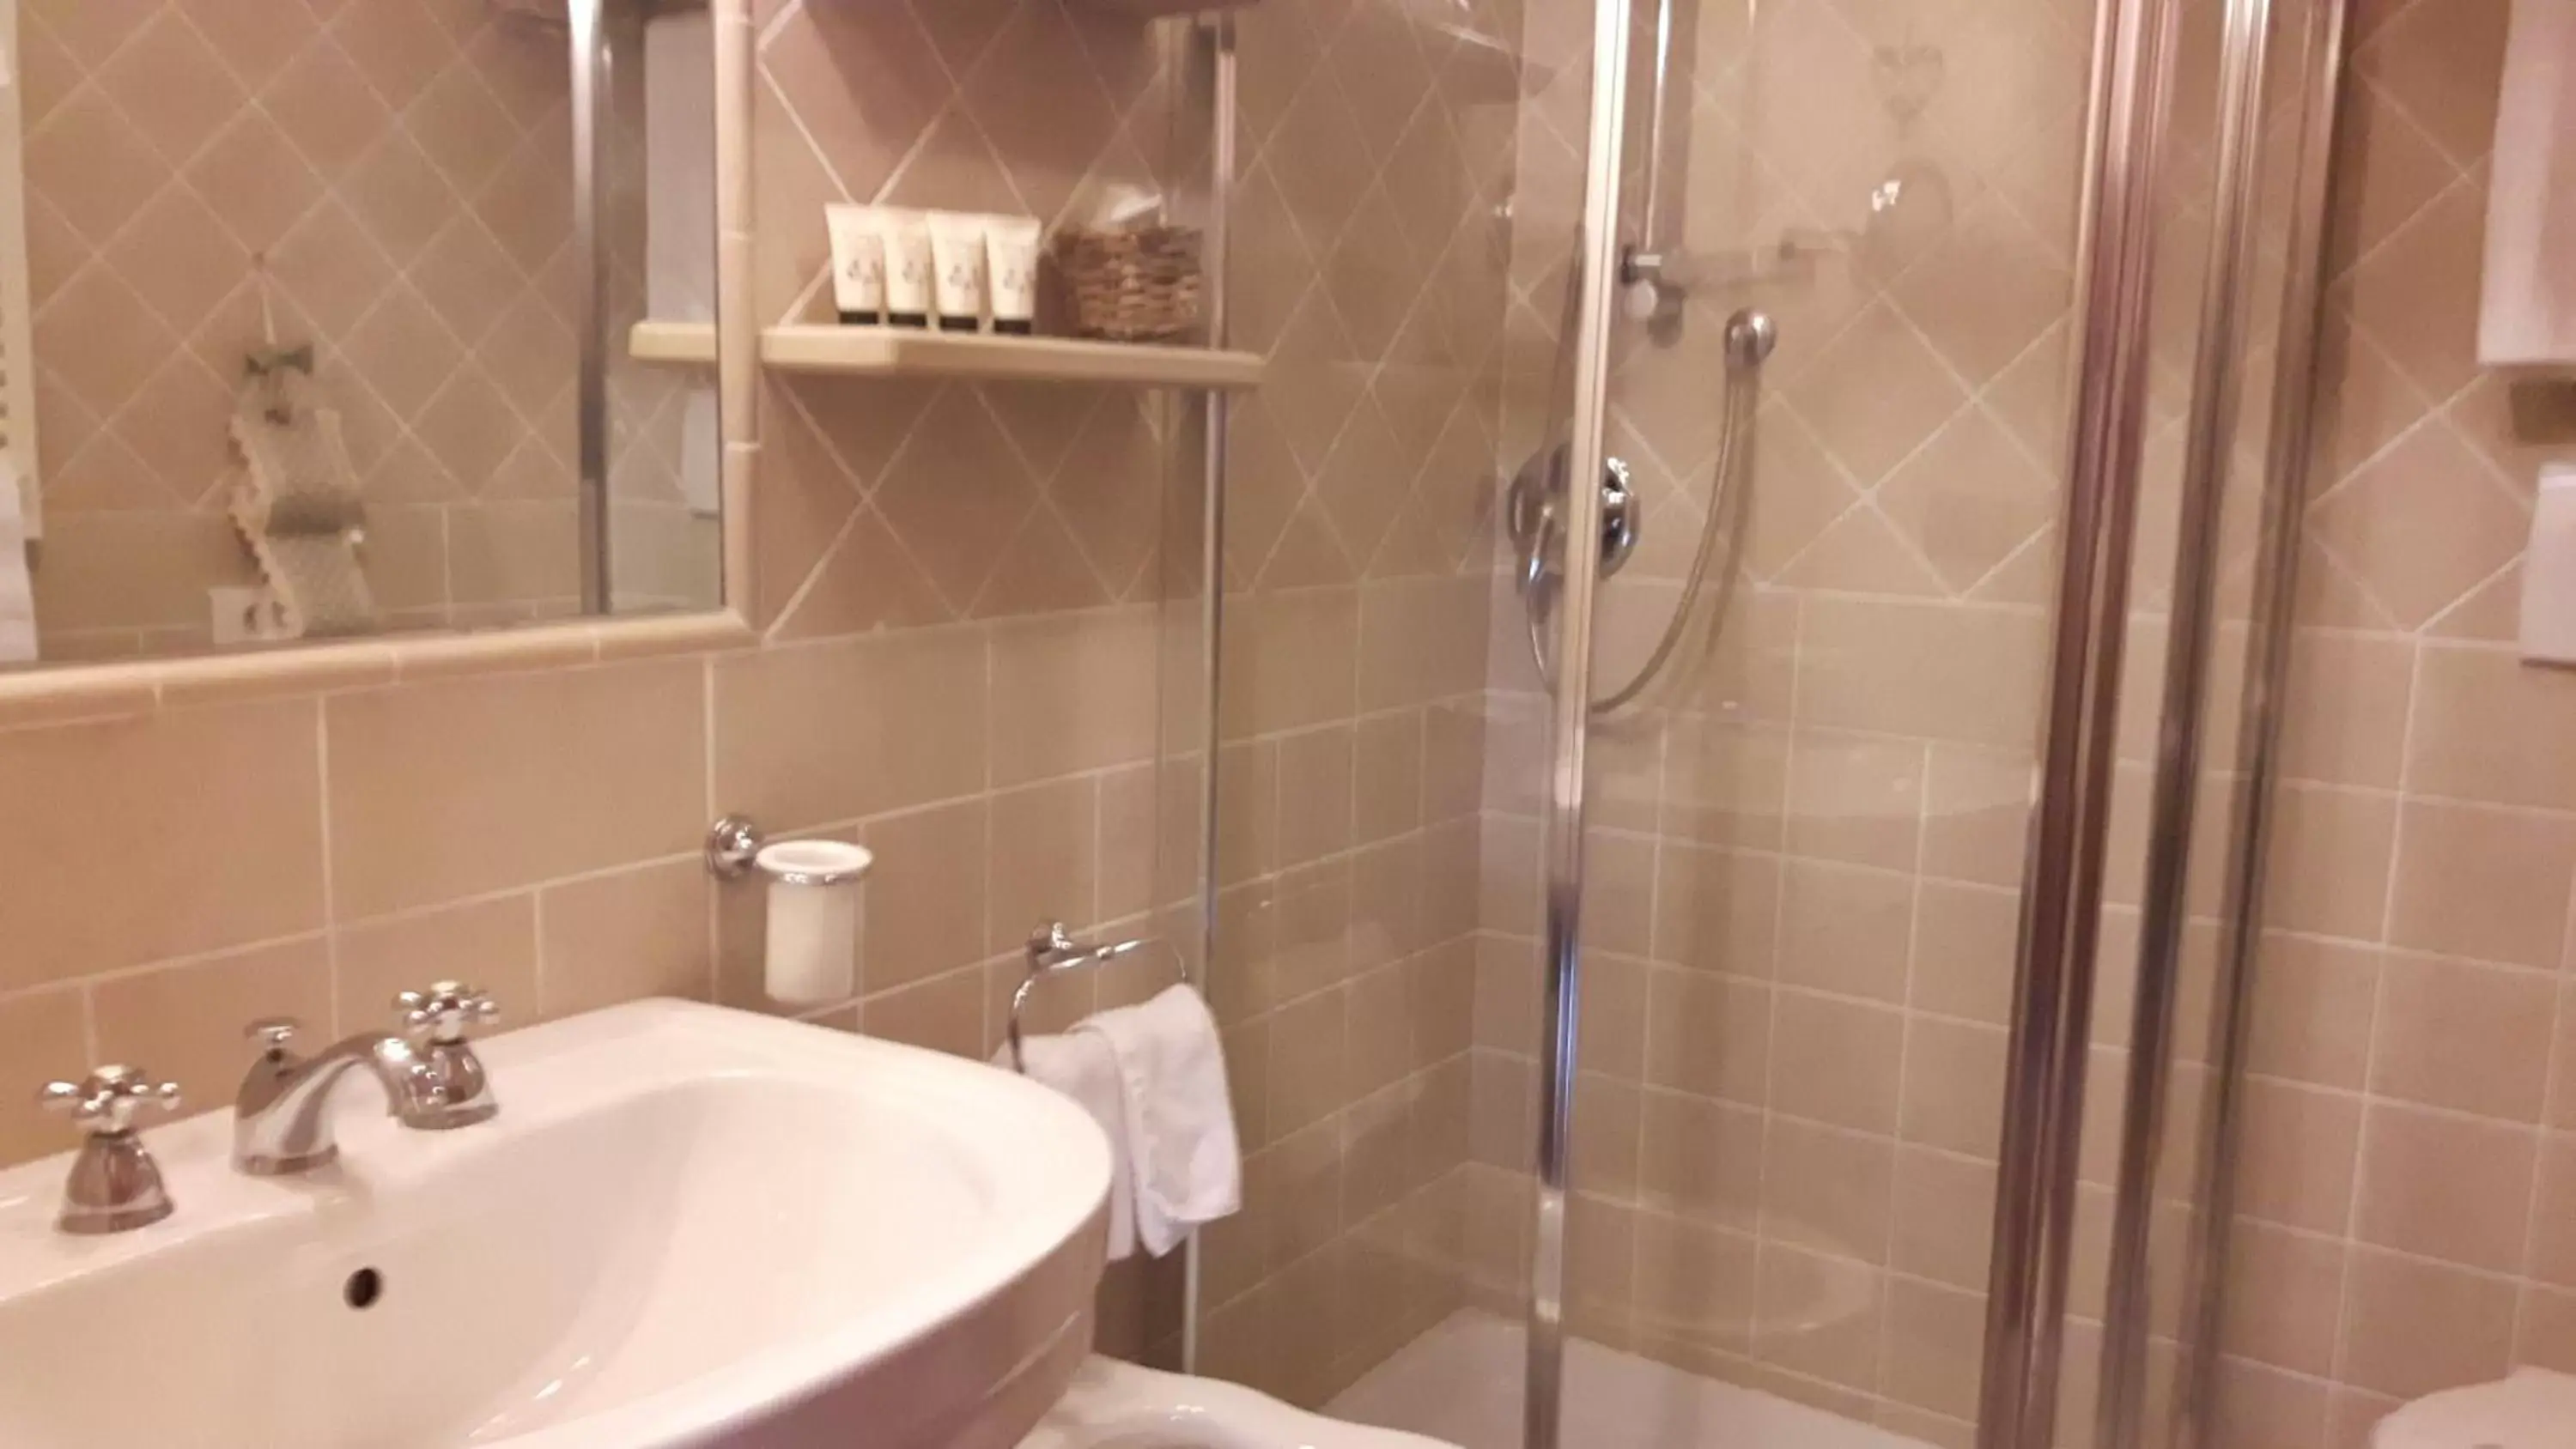 Bathroom in Villa Novecento Romantic Hotel - Estella Hotel Collection